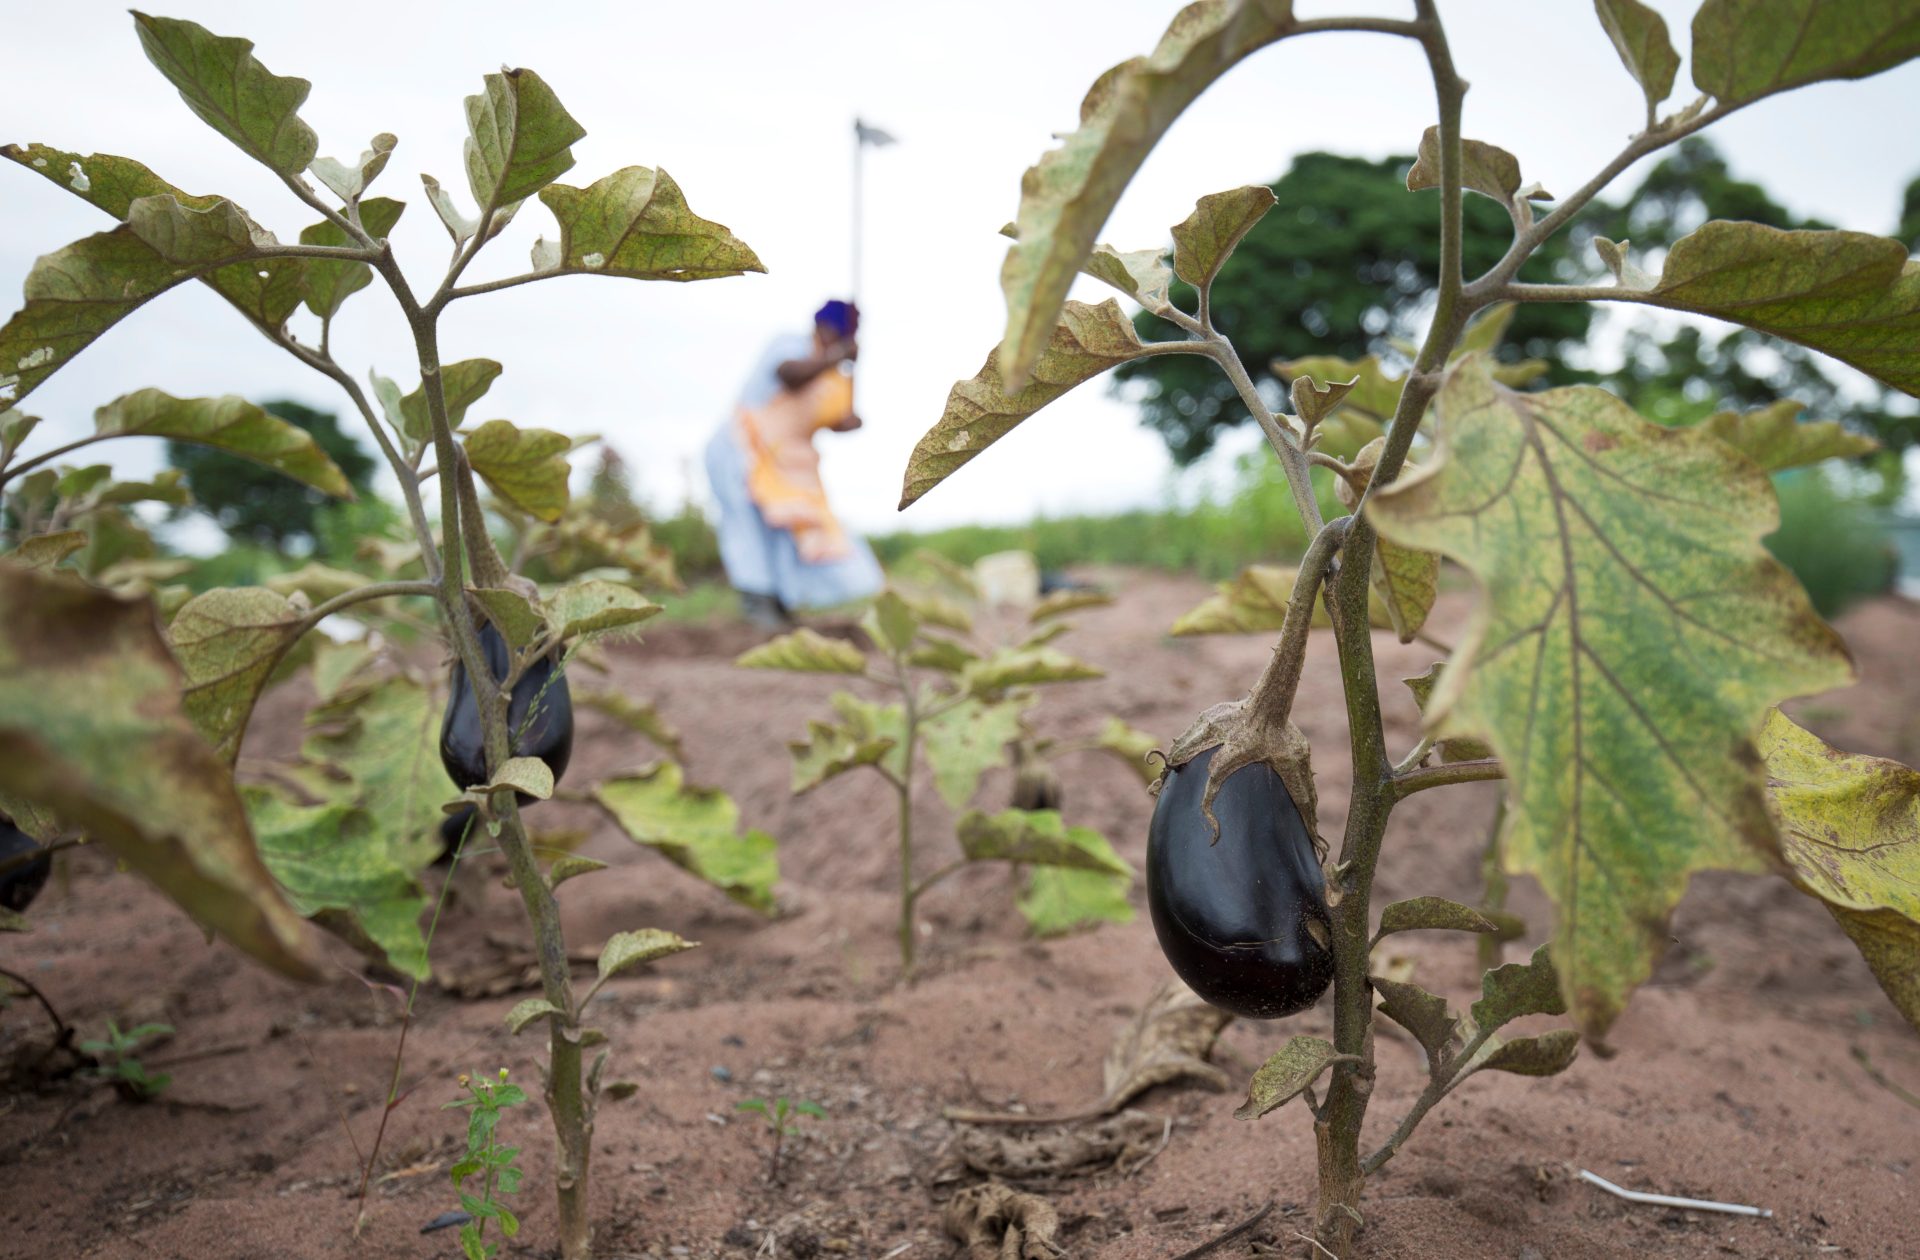 Citoyens oubliés en danger d'éviction les ouvriers agricoles en Afrique du Sud